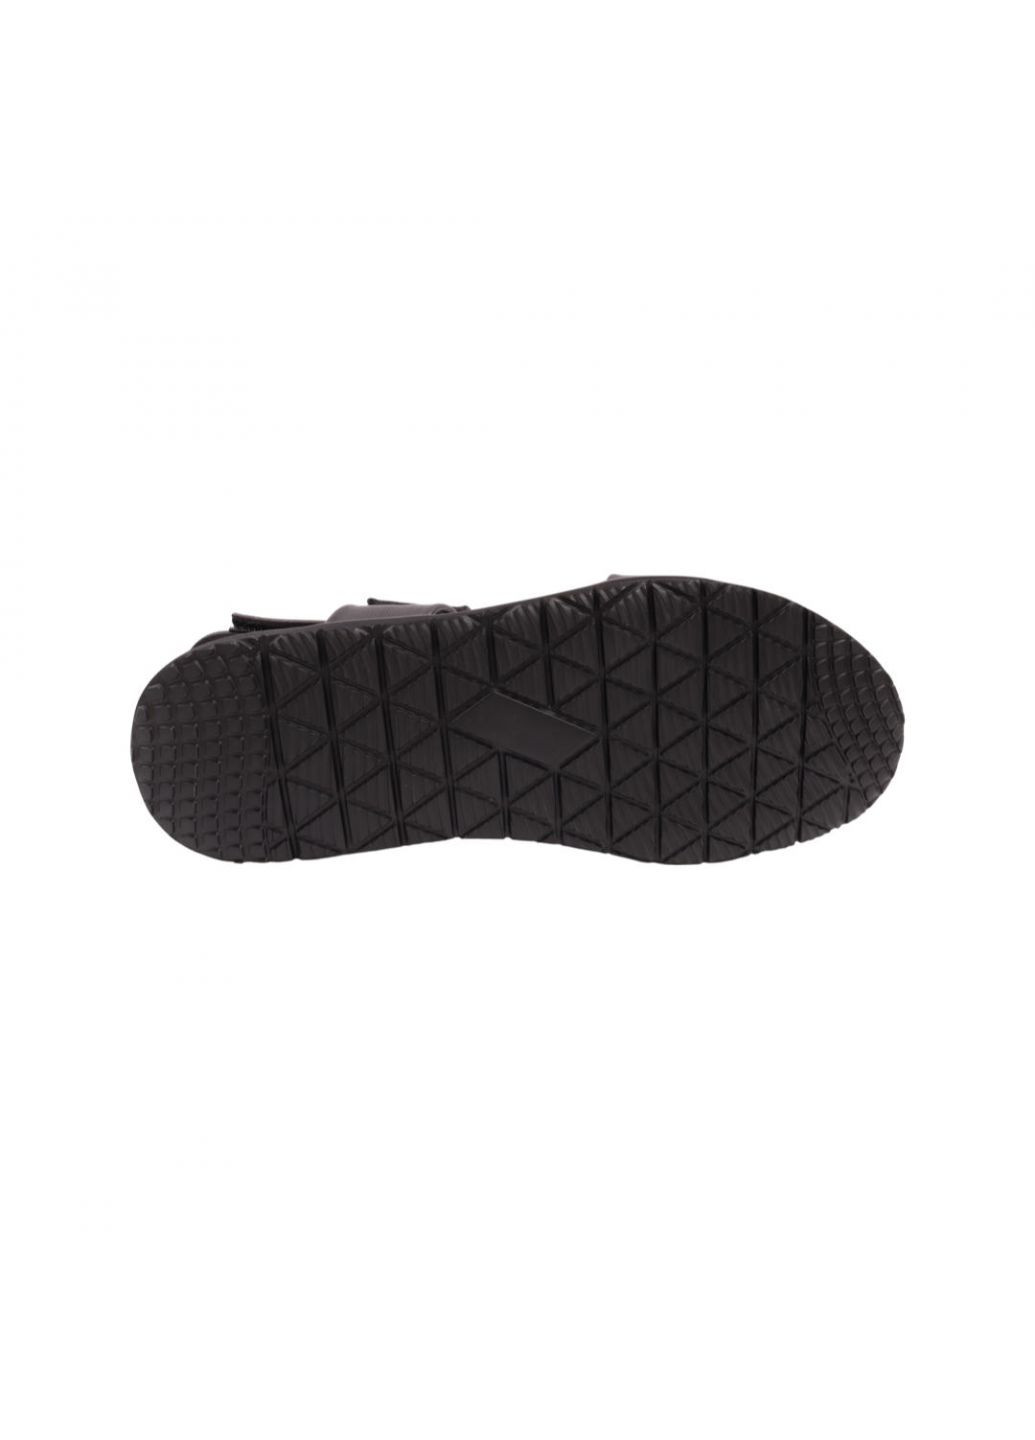 сандали мужские черные натуральная кожа Anemone